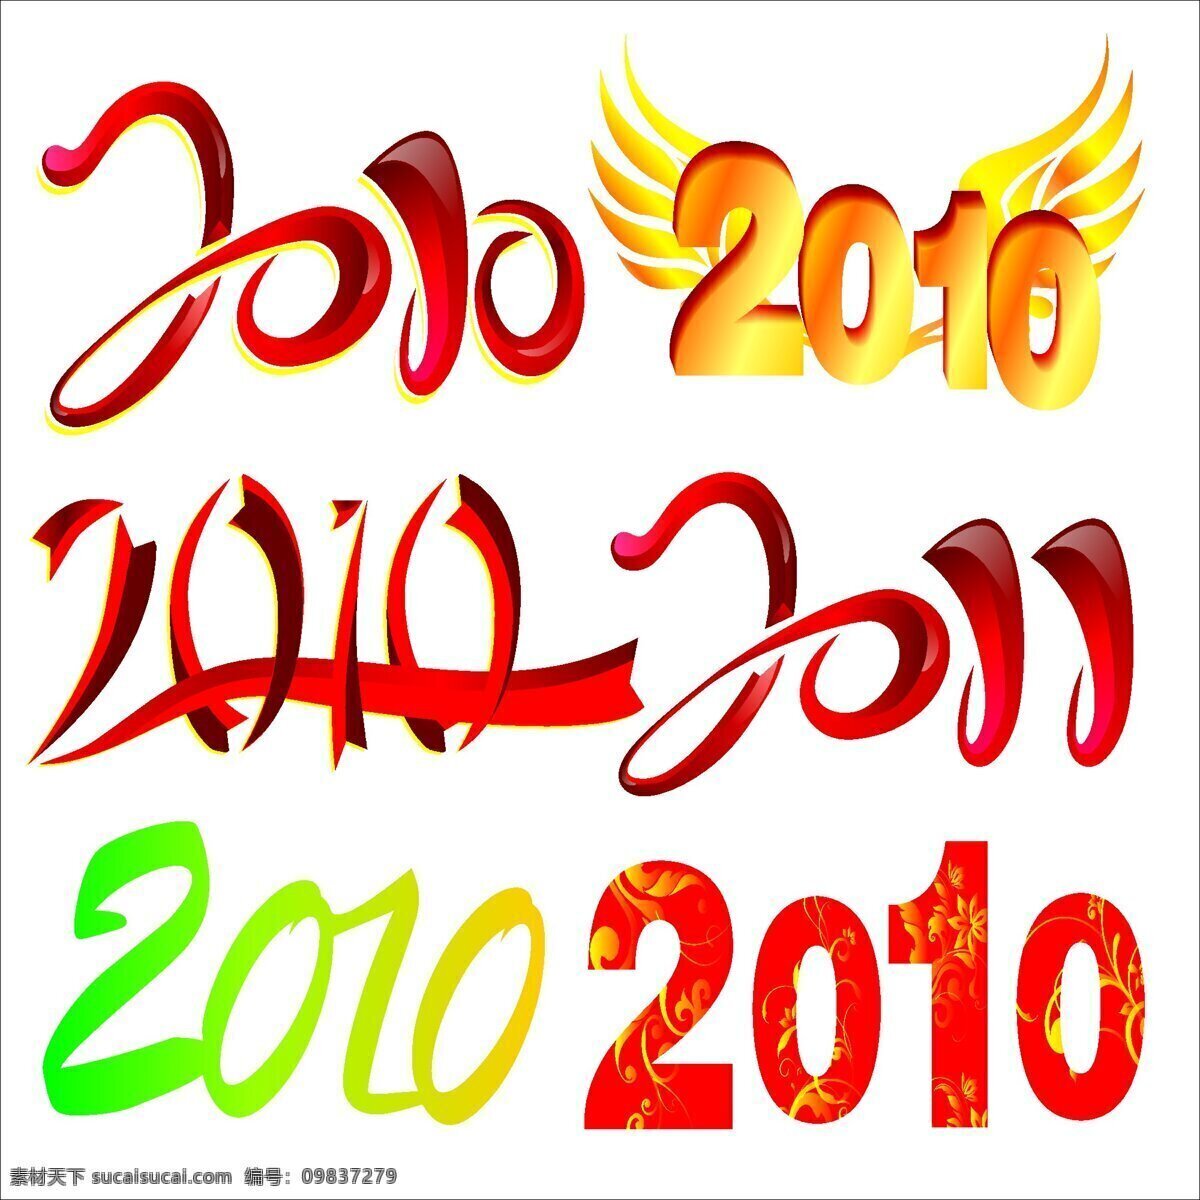 2010 年 字体 春节矢量图 节日矢量素材 矢量图 节日素材 2015 新年 元旦 春节 元宵